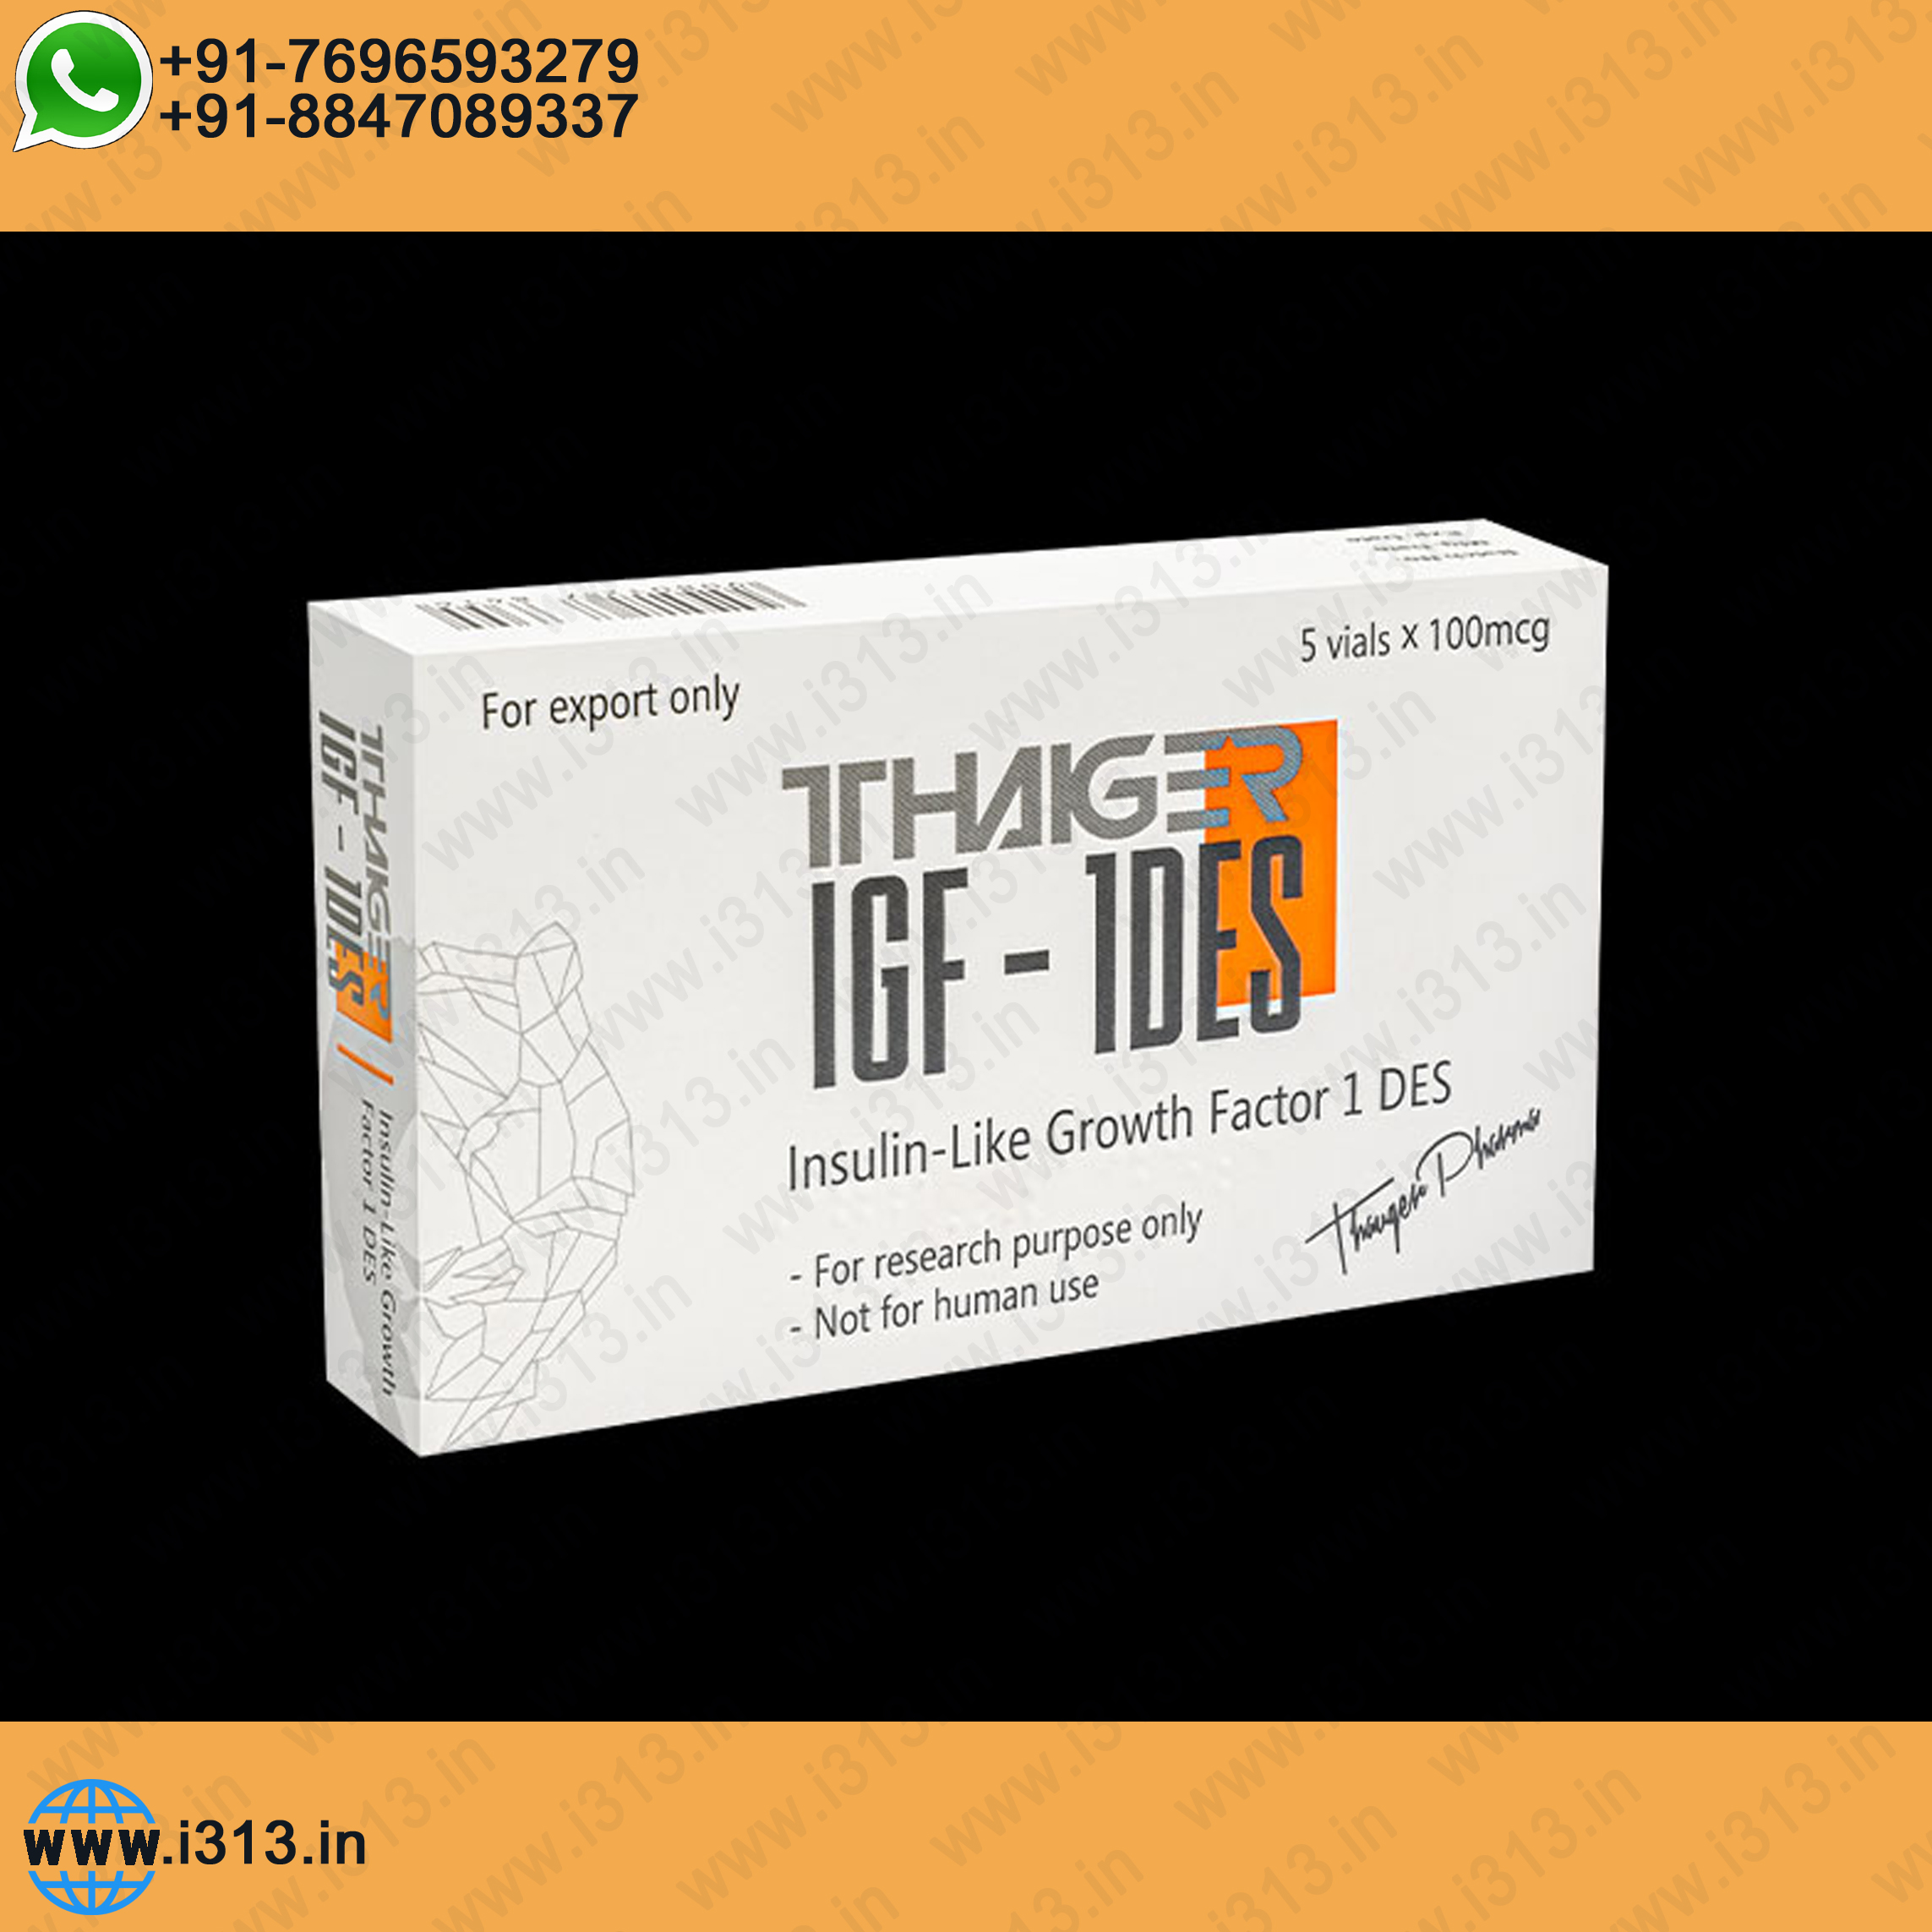 Thaiger Pharma IGF-1 DES